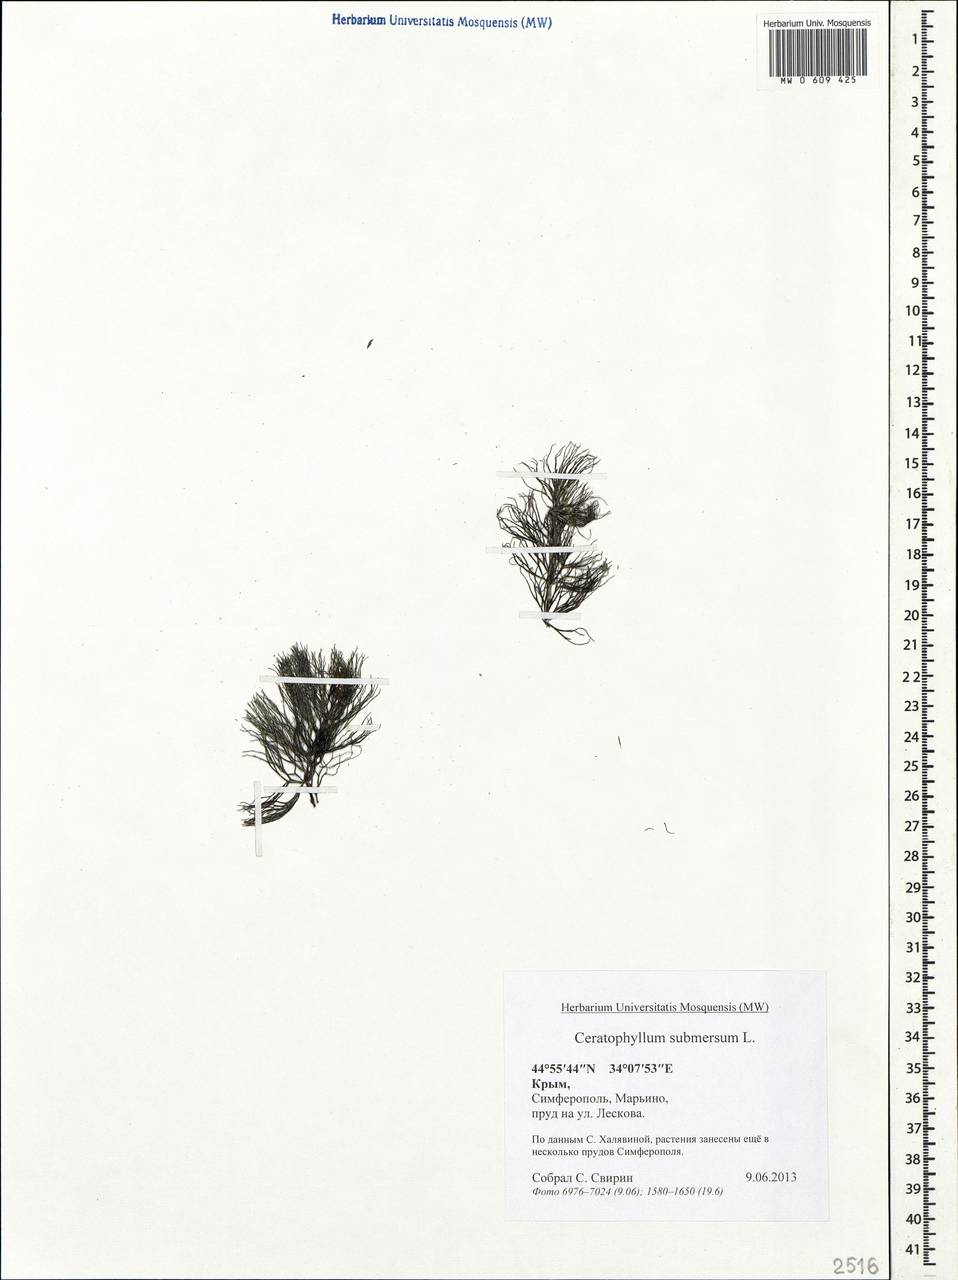 Ceratophyllum submersum L., Crimea (KRYM) (Russia)